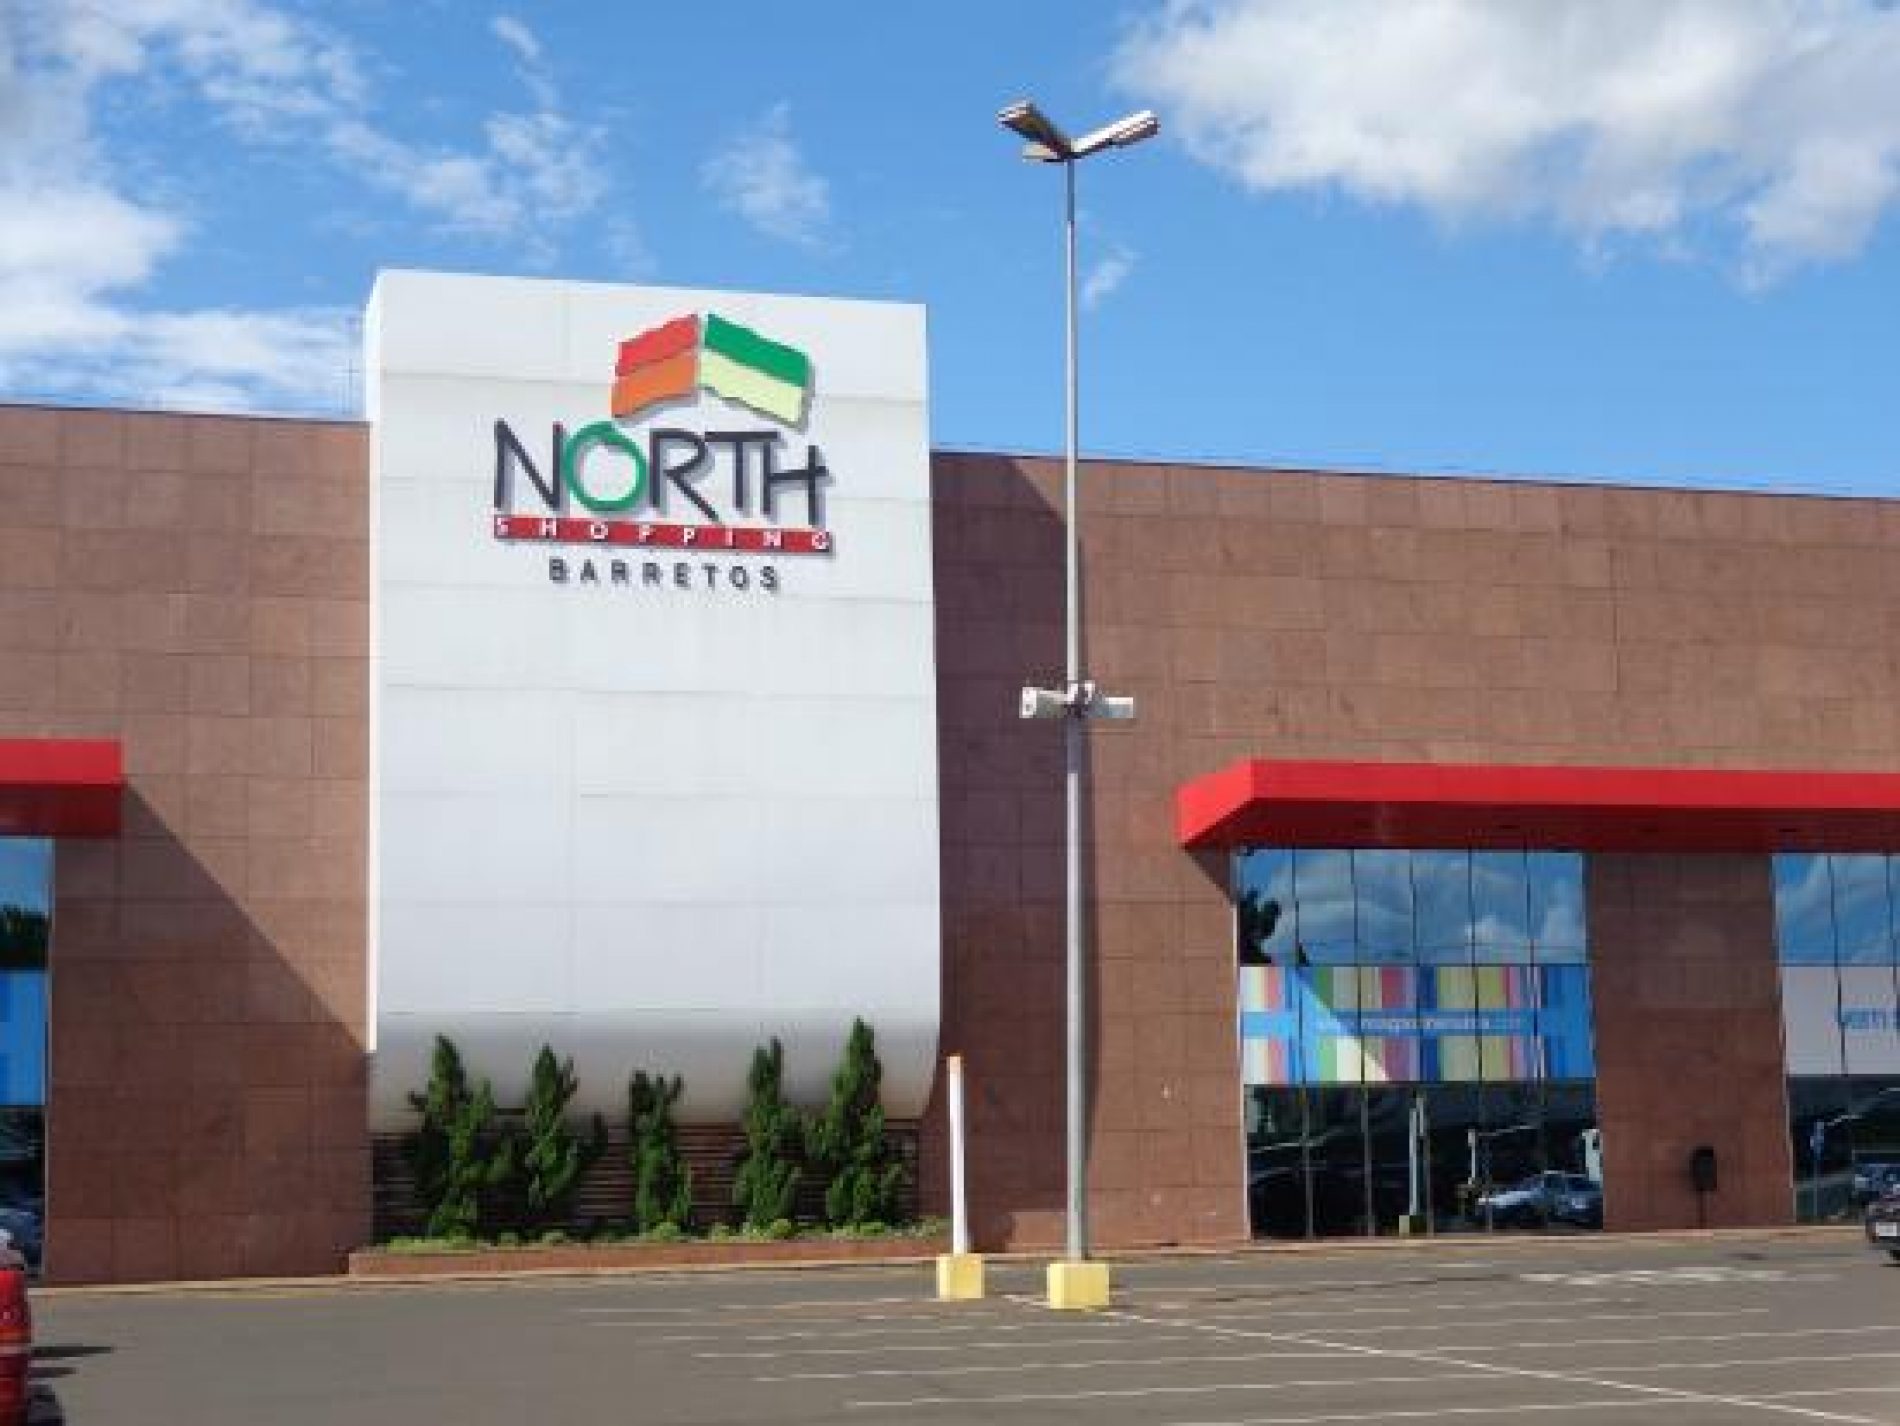 BARRETOS: Passeio virtual pelo North Shopping está disponível no Google